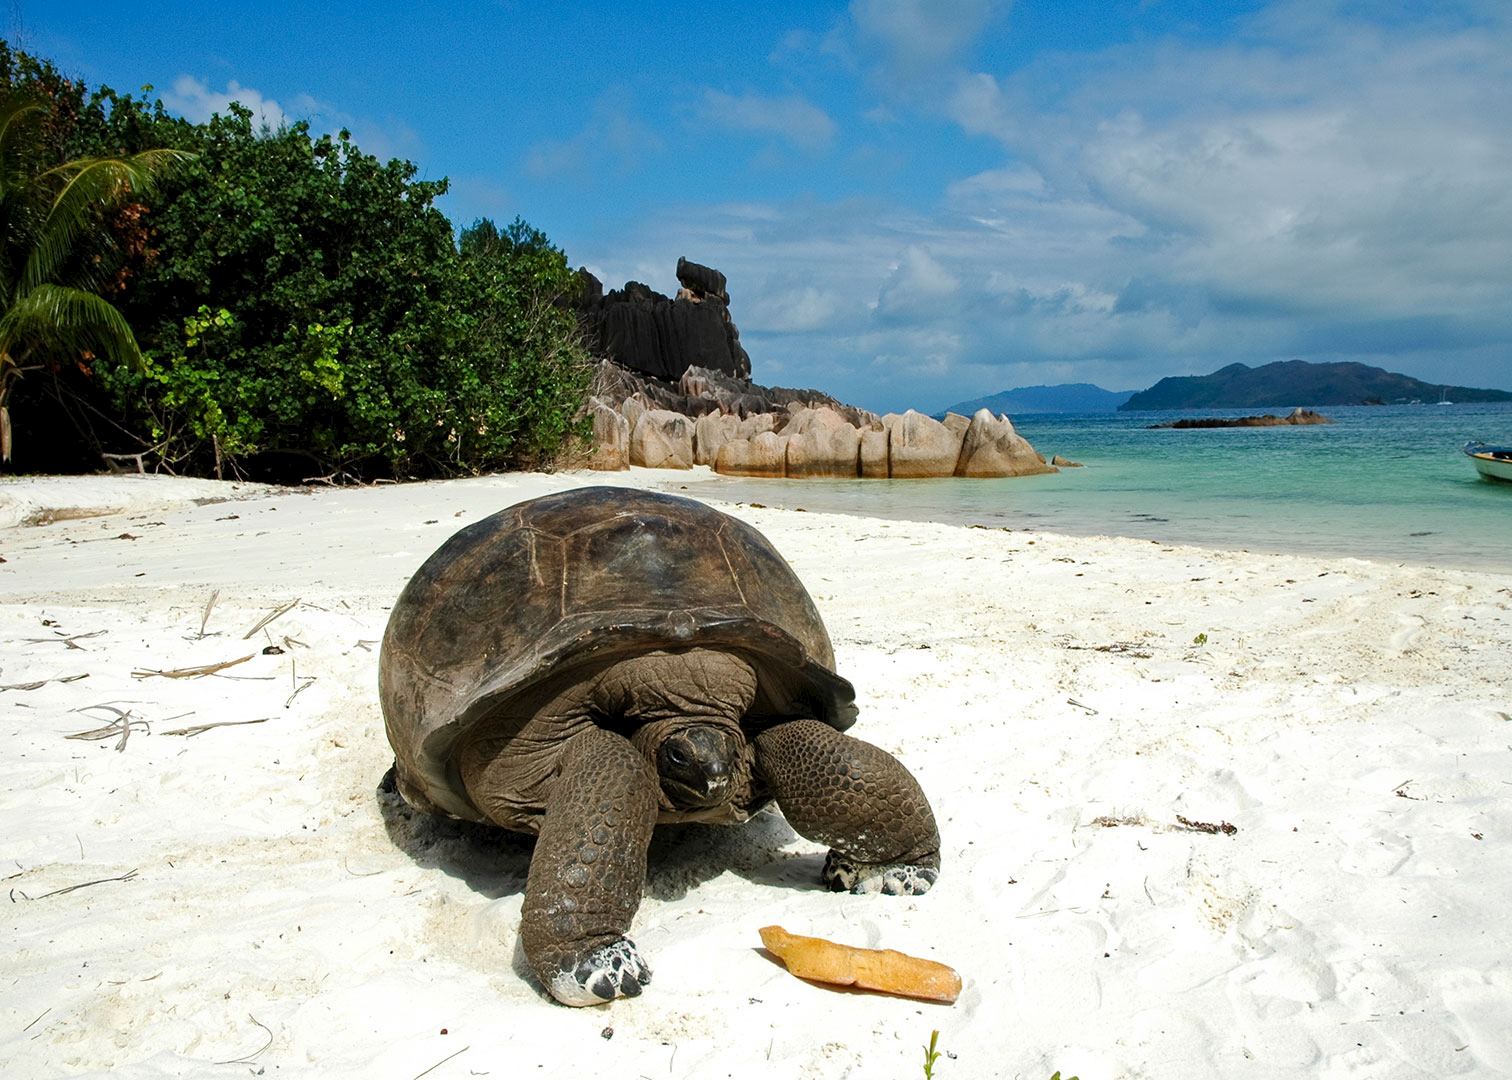 Giant tortoise, Seychelles